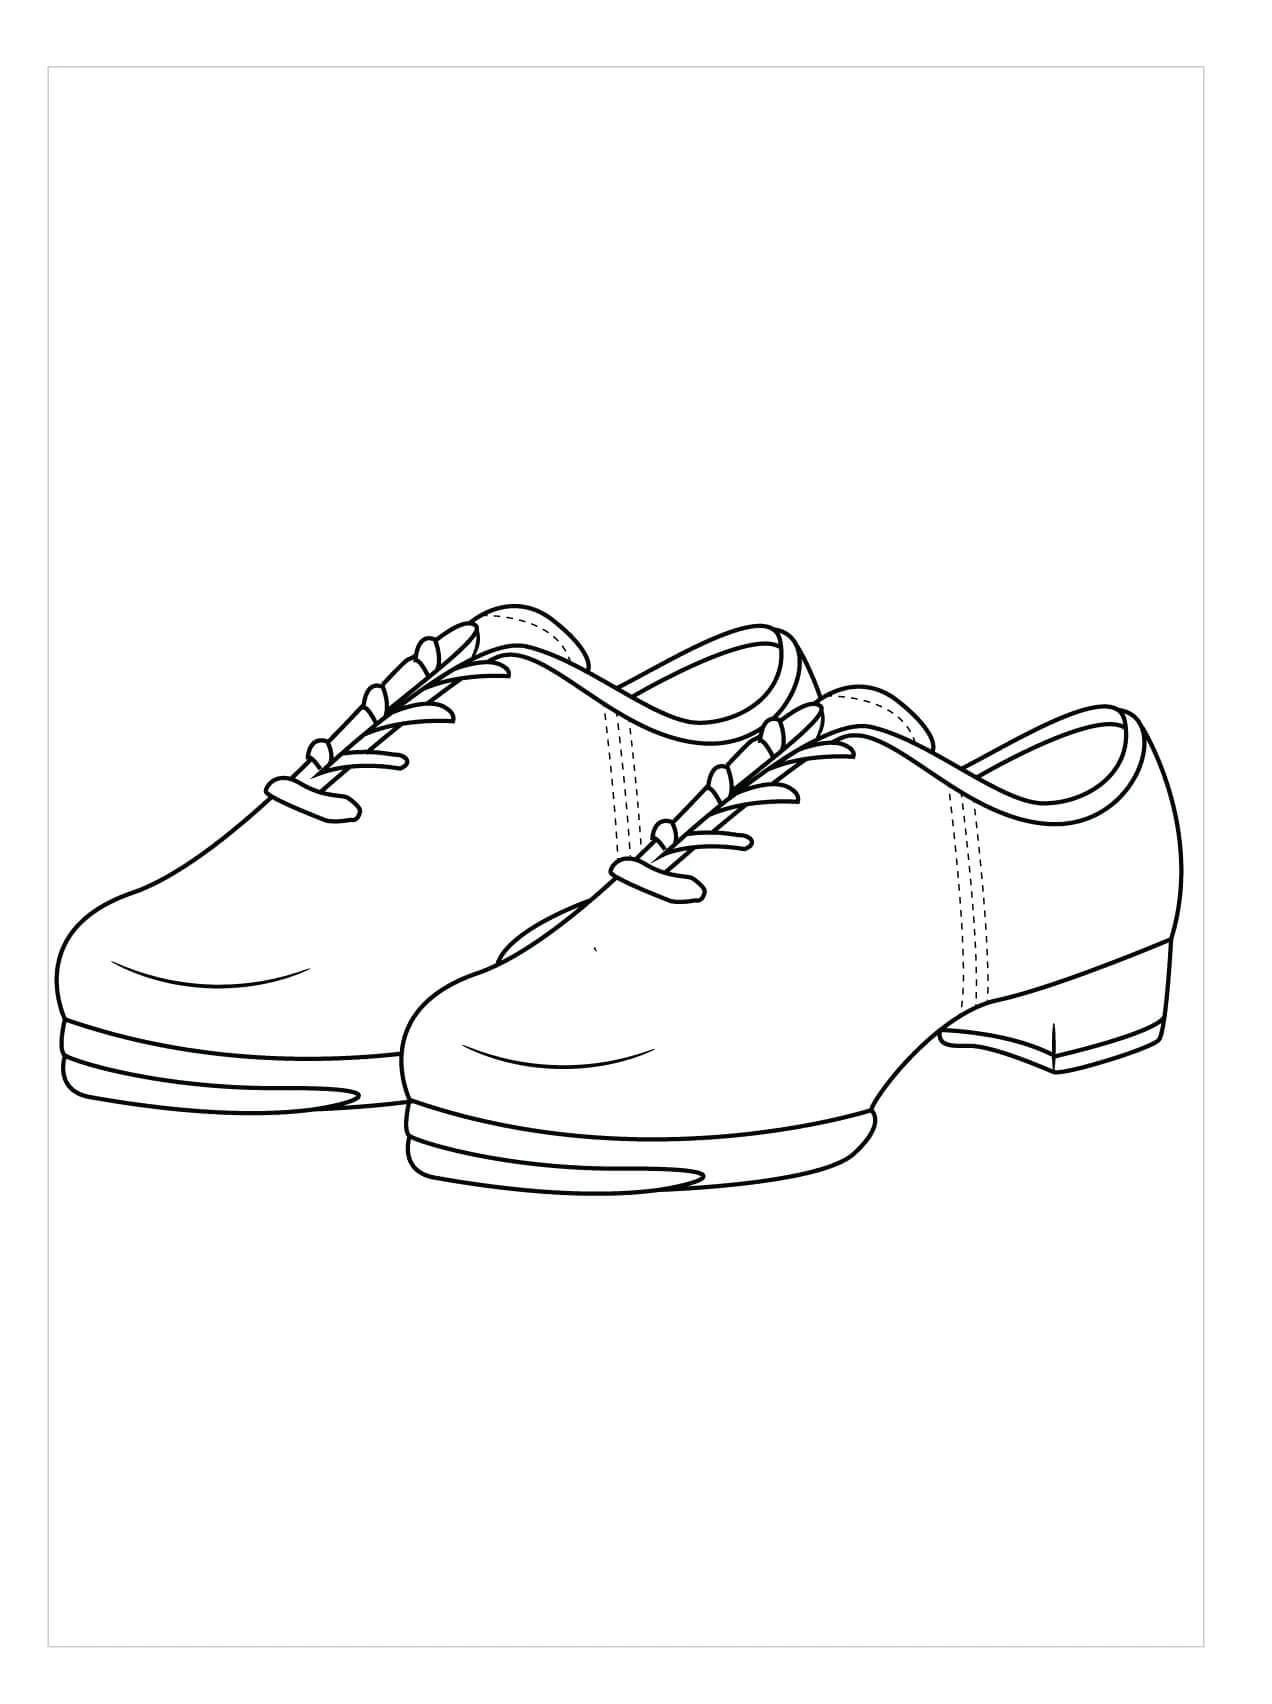 Dibujos de Clogging Shoes para colorear